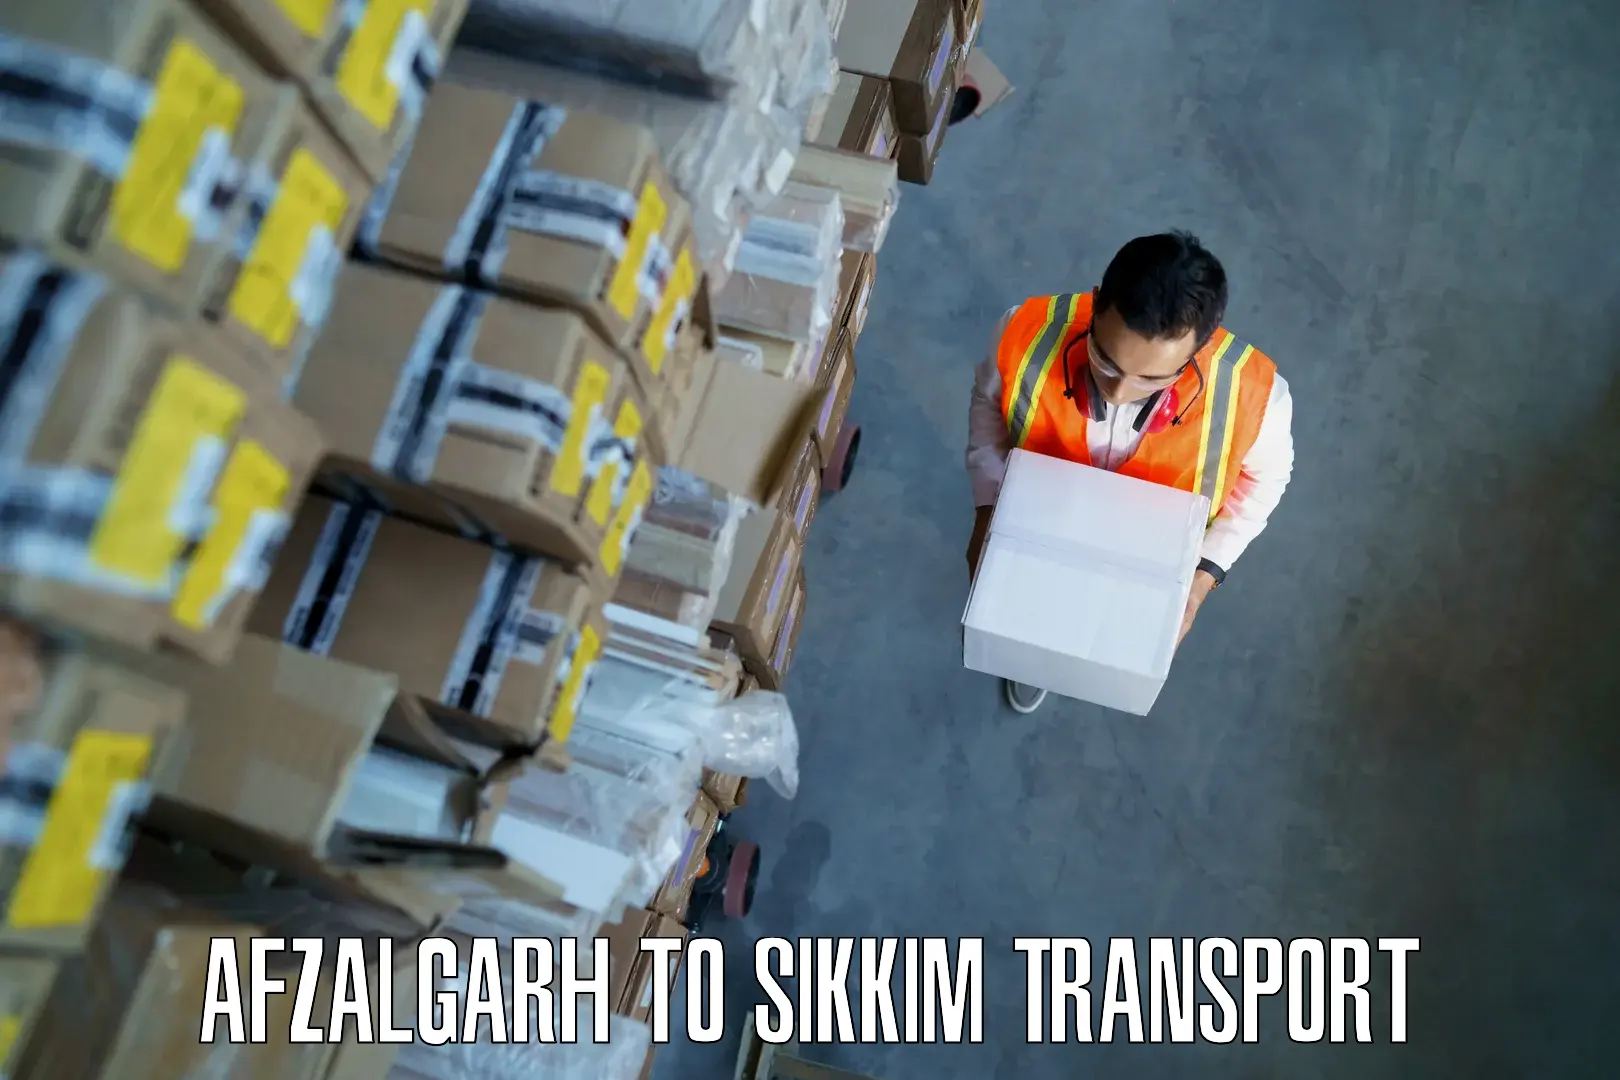 Pick up transport service Afzalgarh to Sikkim